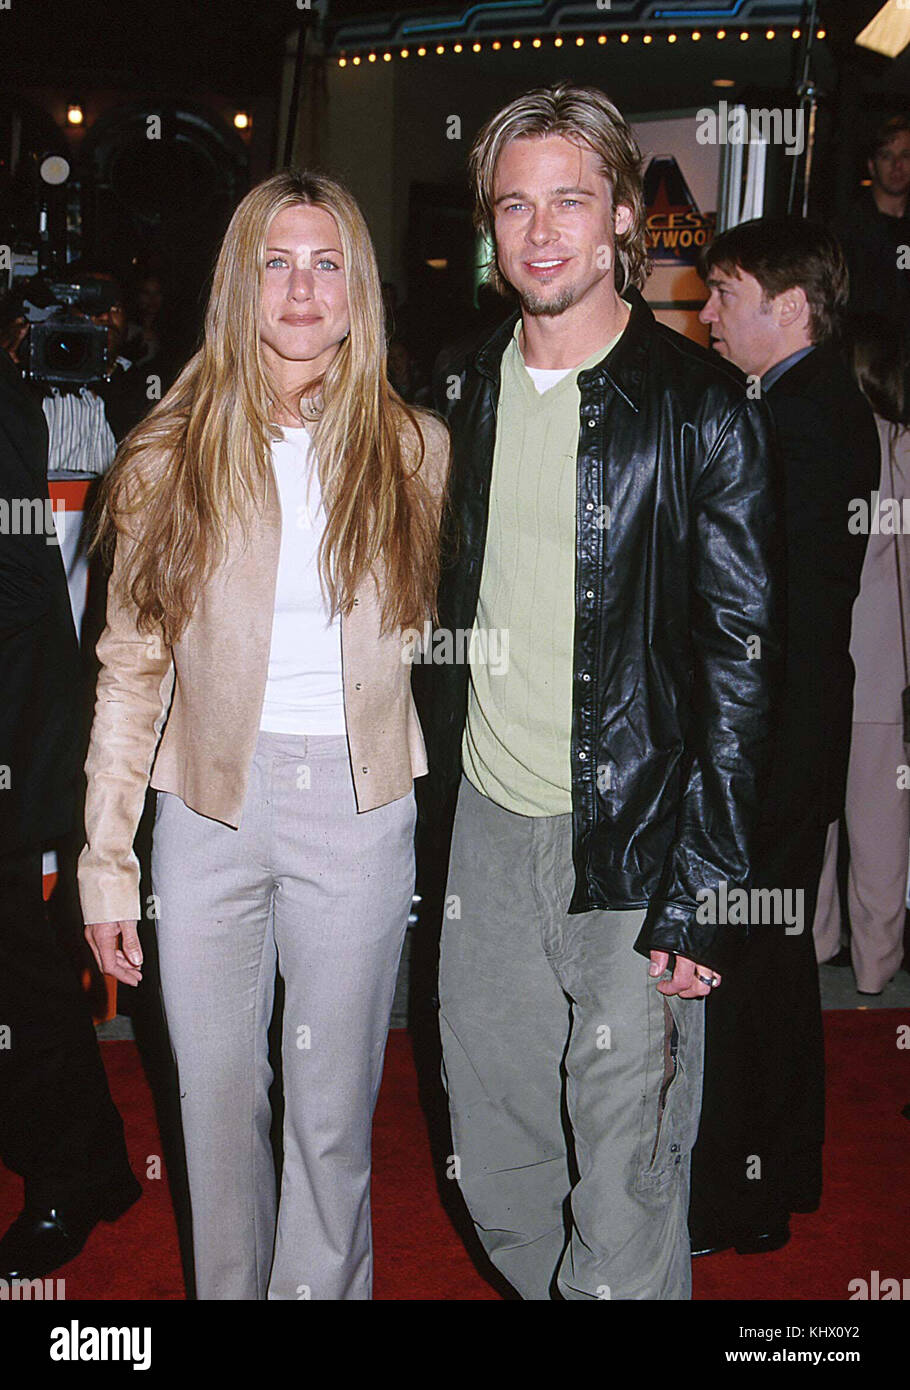 Brad Pitt e Jennifer Aniston-3 2. Attore, Attrice, premiere, celebrità evento, arrivo, verticale, industria cinematografica, celebrità bestof, arte cultura e intrattenimento, topix Foto Stock